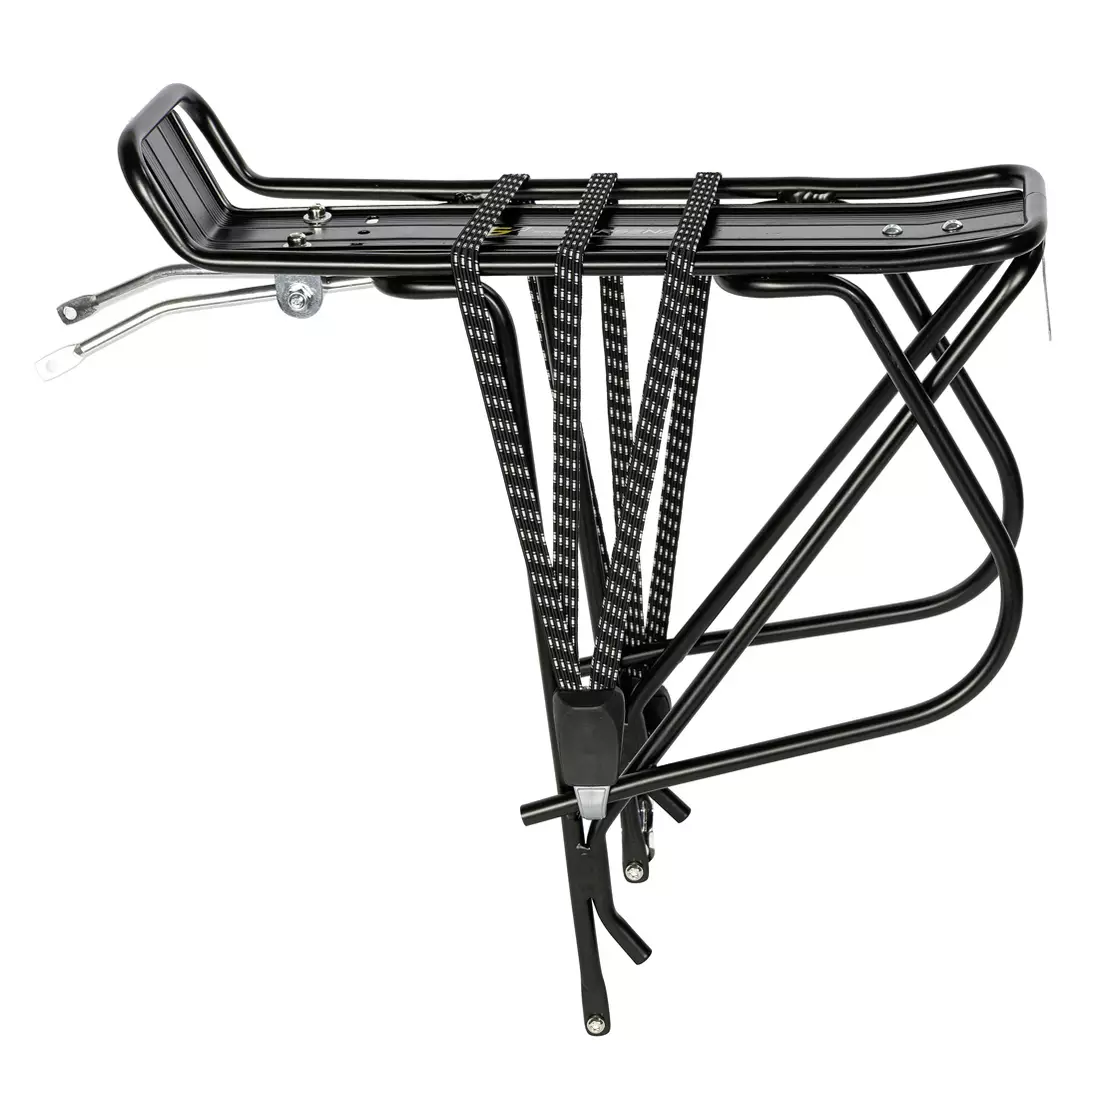 SPORT ARSENAL 215 - suport de biciclete din aluminiu pentru transportul bagaje, negru